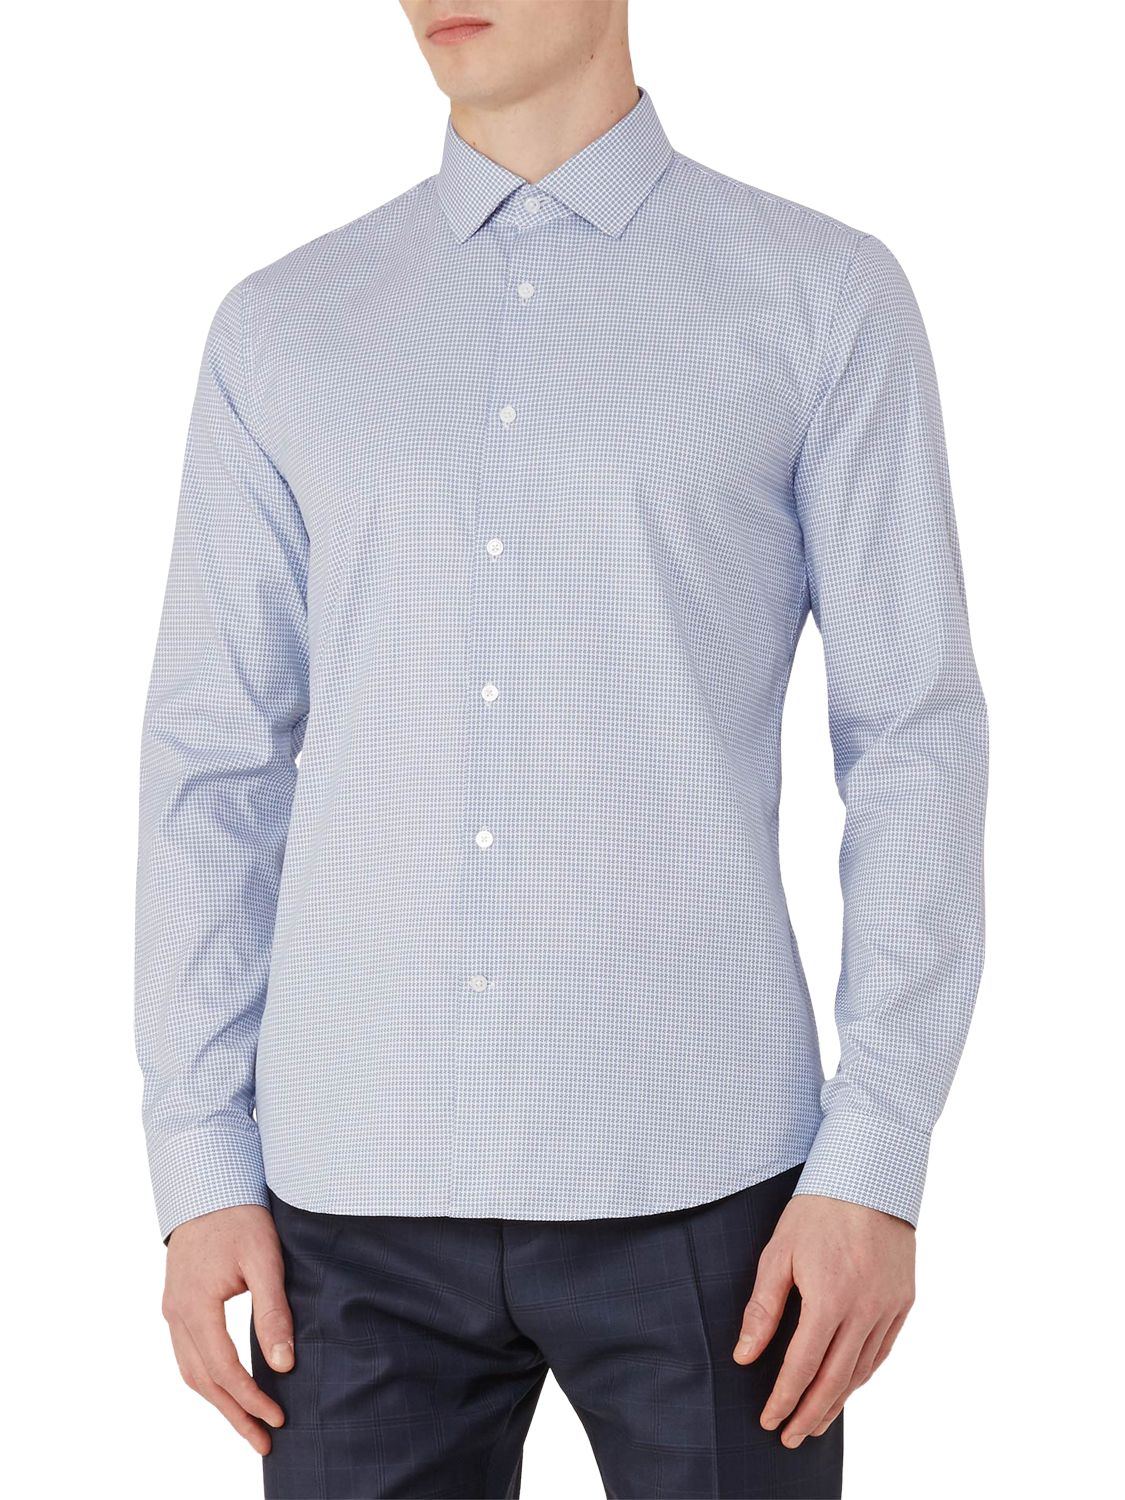 Reiss Mattusi Houndstooth Cotton Slim Fit Shirt, Soft Blue, XL